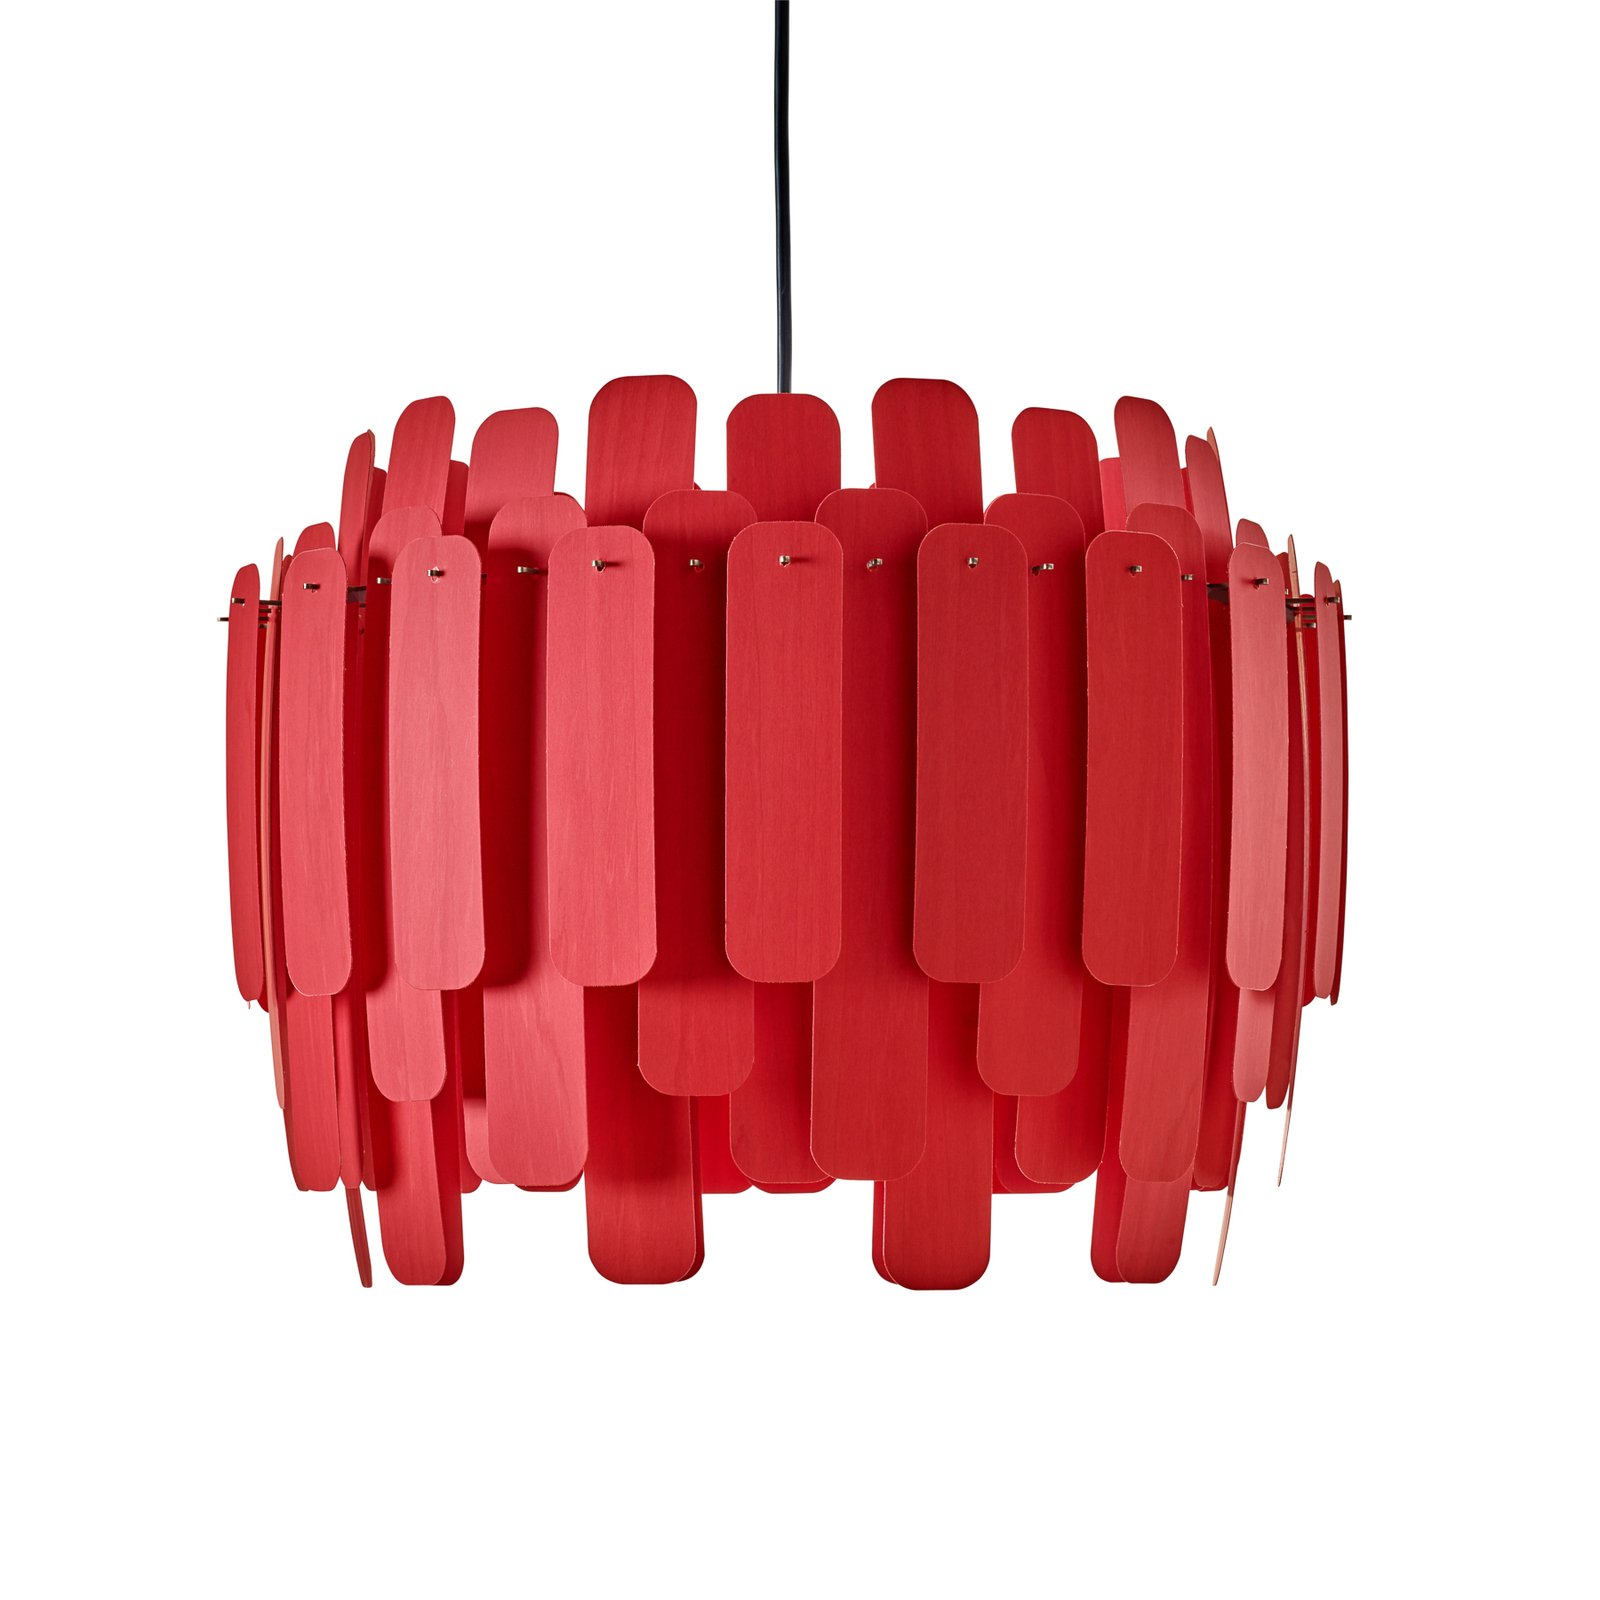 LZF Maruja lampada a sospensione di legno, rosso